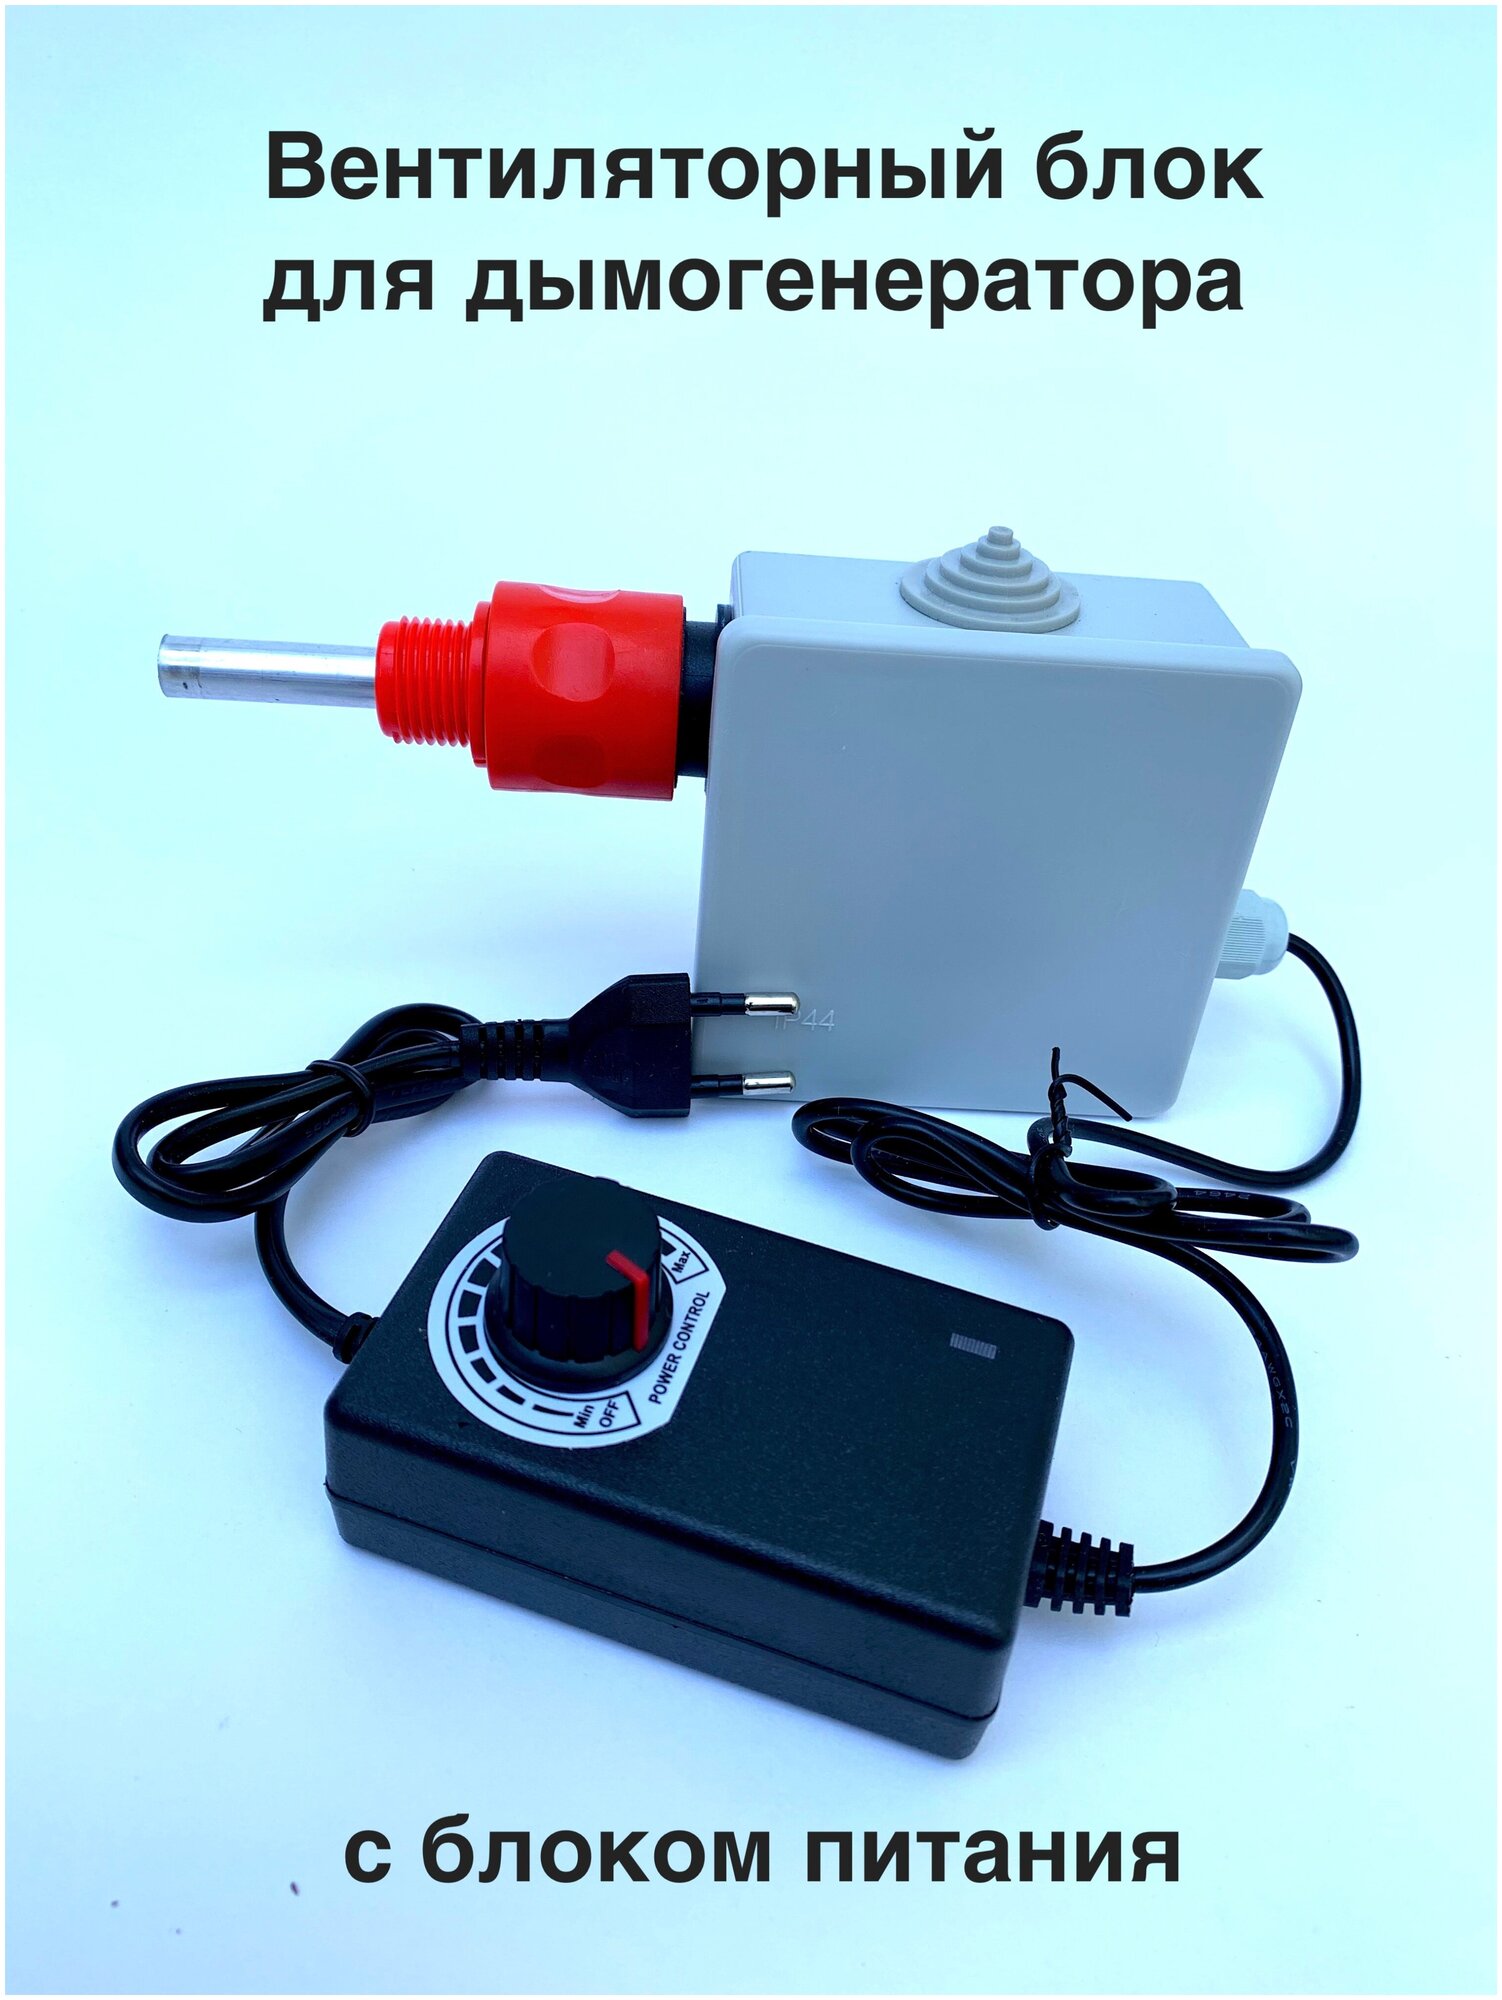 Вентиляторный блок регулируемый для дымогенератора с эжектором